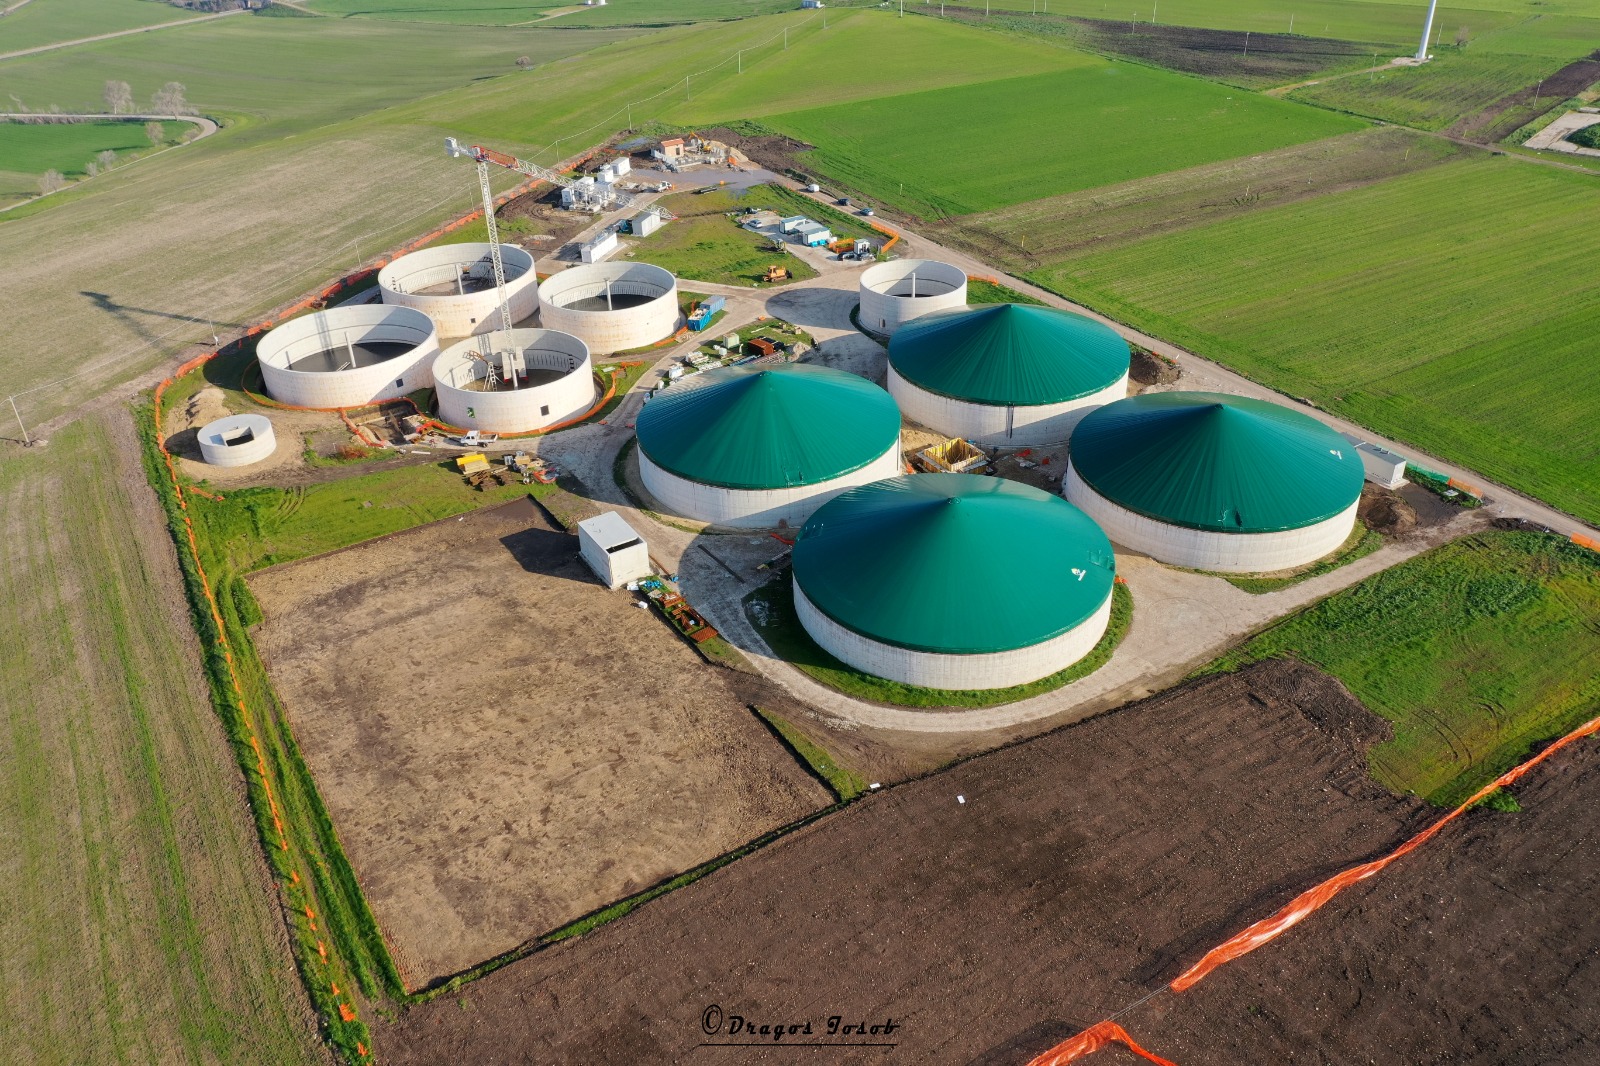 Comment Belenergia veut devenir un champion du biogaz en France